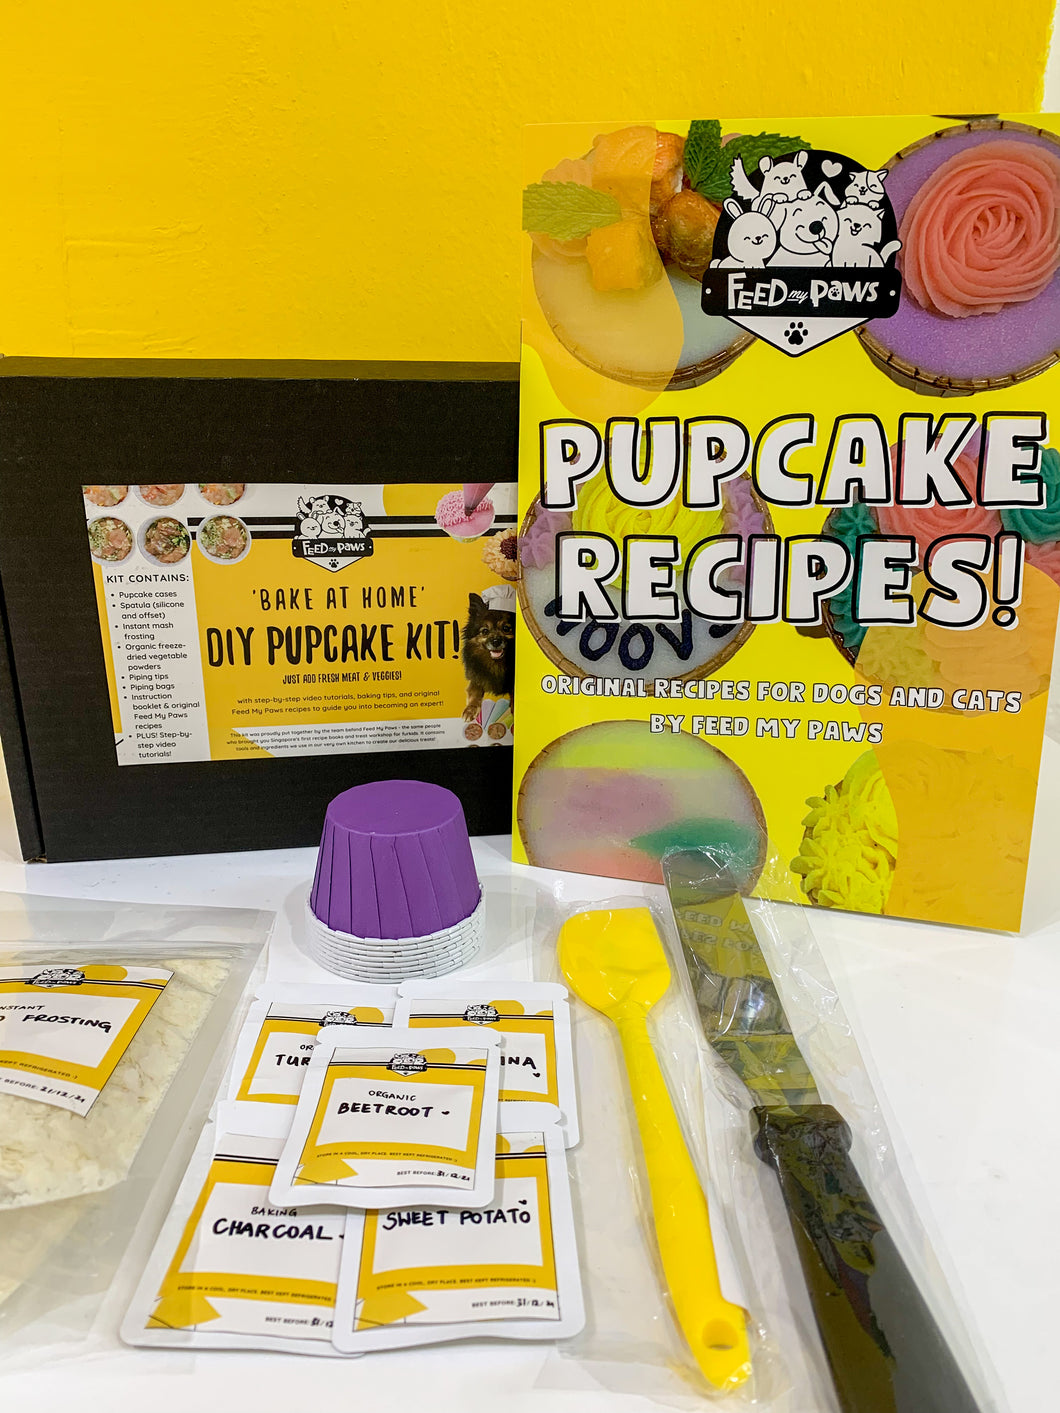 Bake at Home DIY Pupcake Kit!